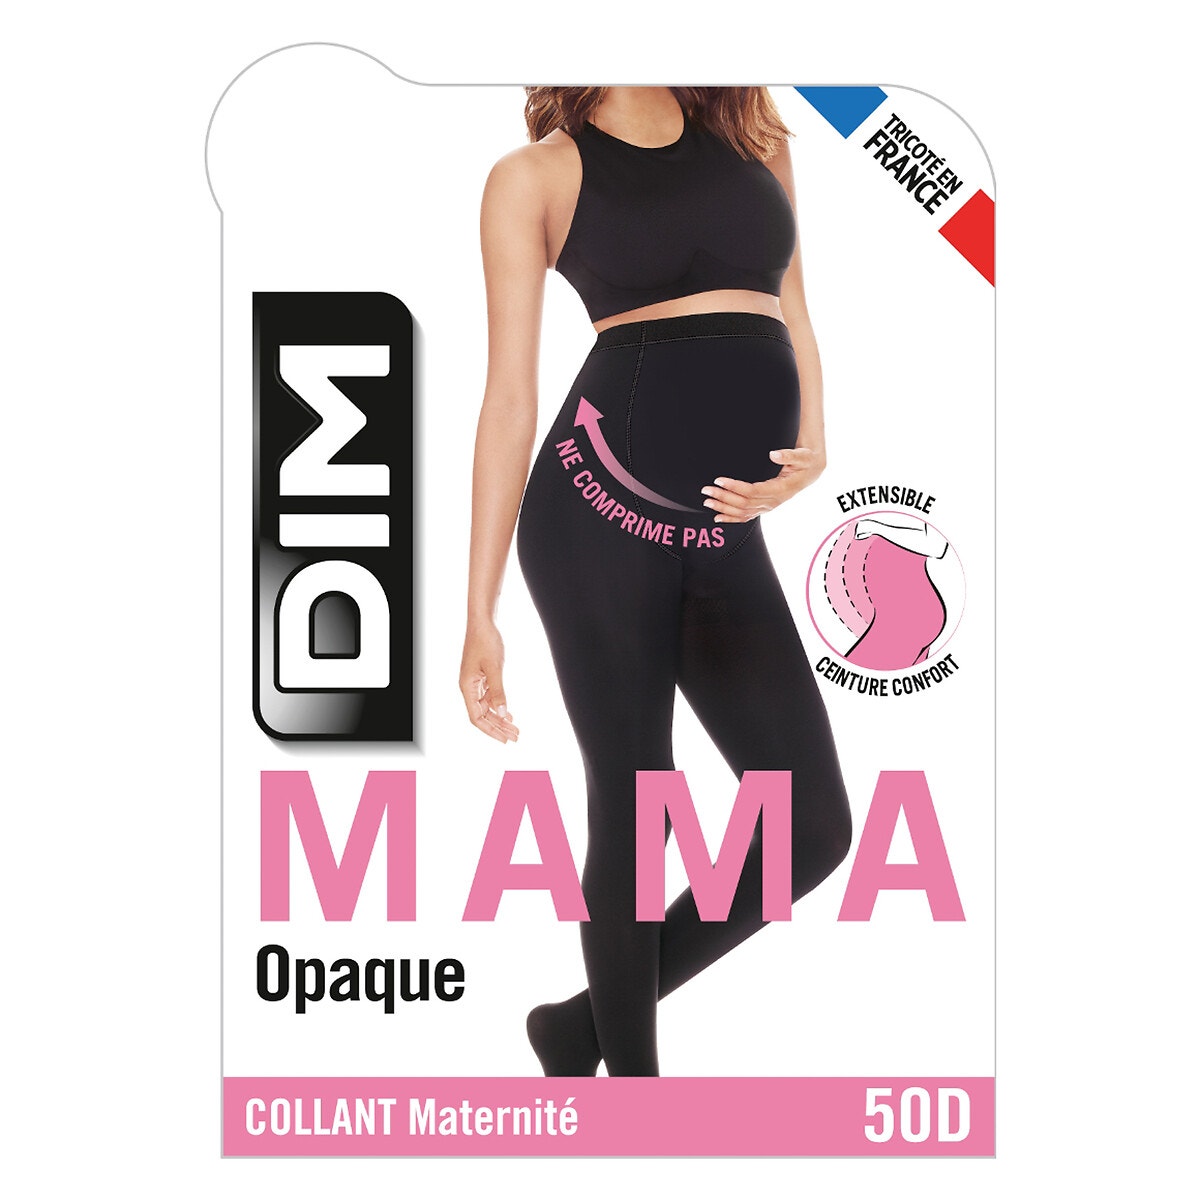 Collant maternité - Opaque 50D éco - Rachel – Mlle et Coco Inc.